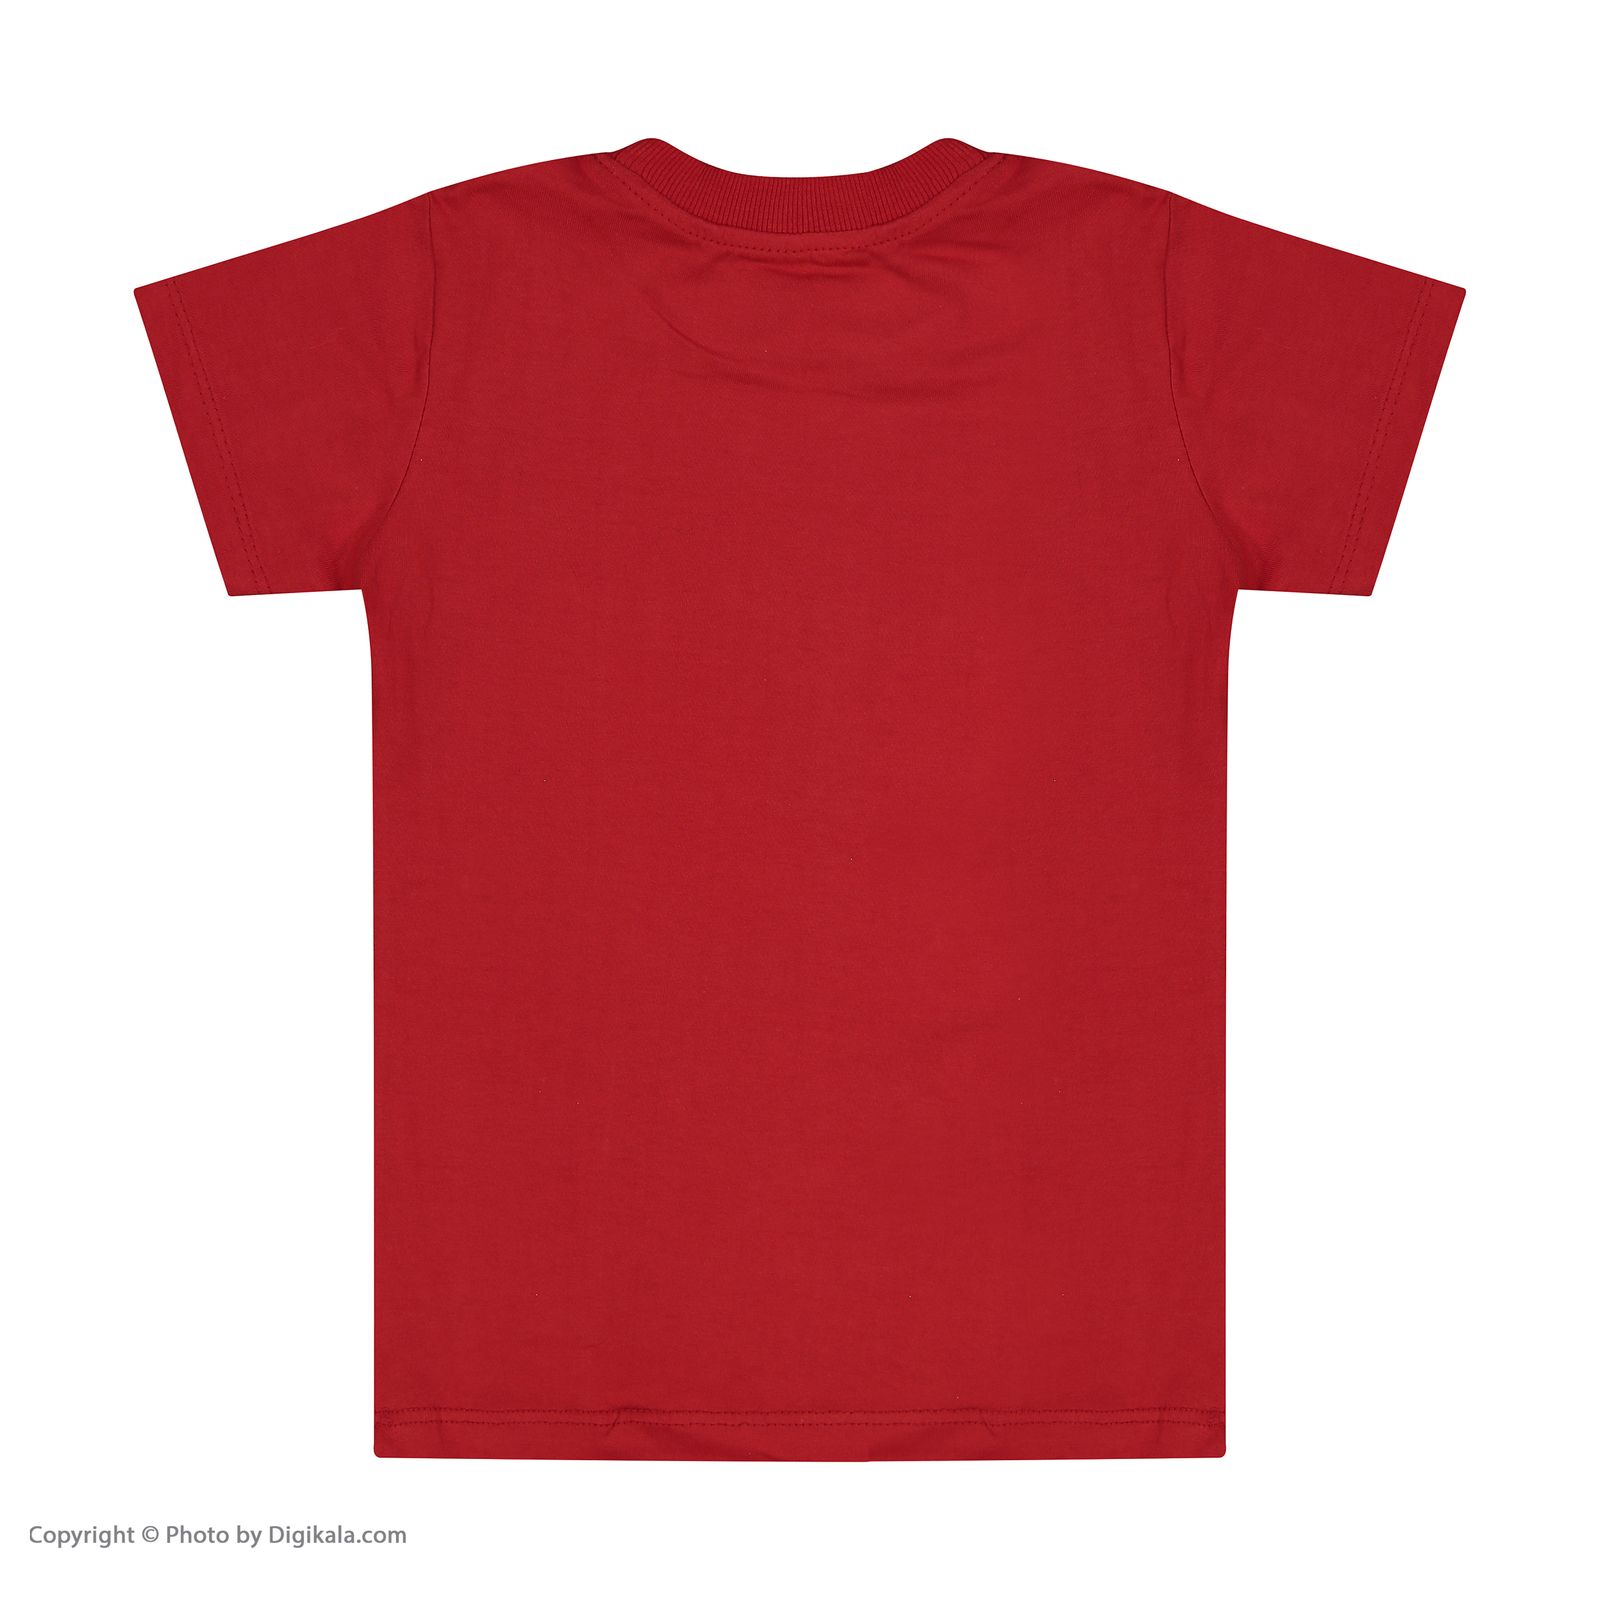 ست تی شرت و شلوار بچگانه بانالی مدل آلاسکا کد 3483 -  - 4